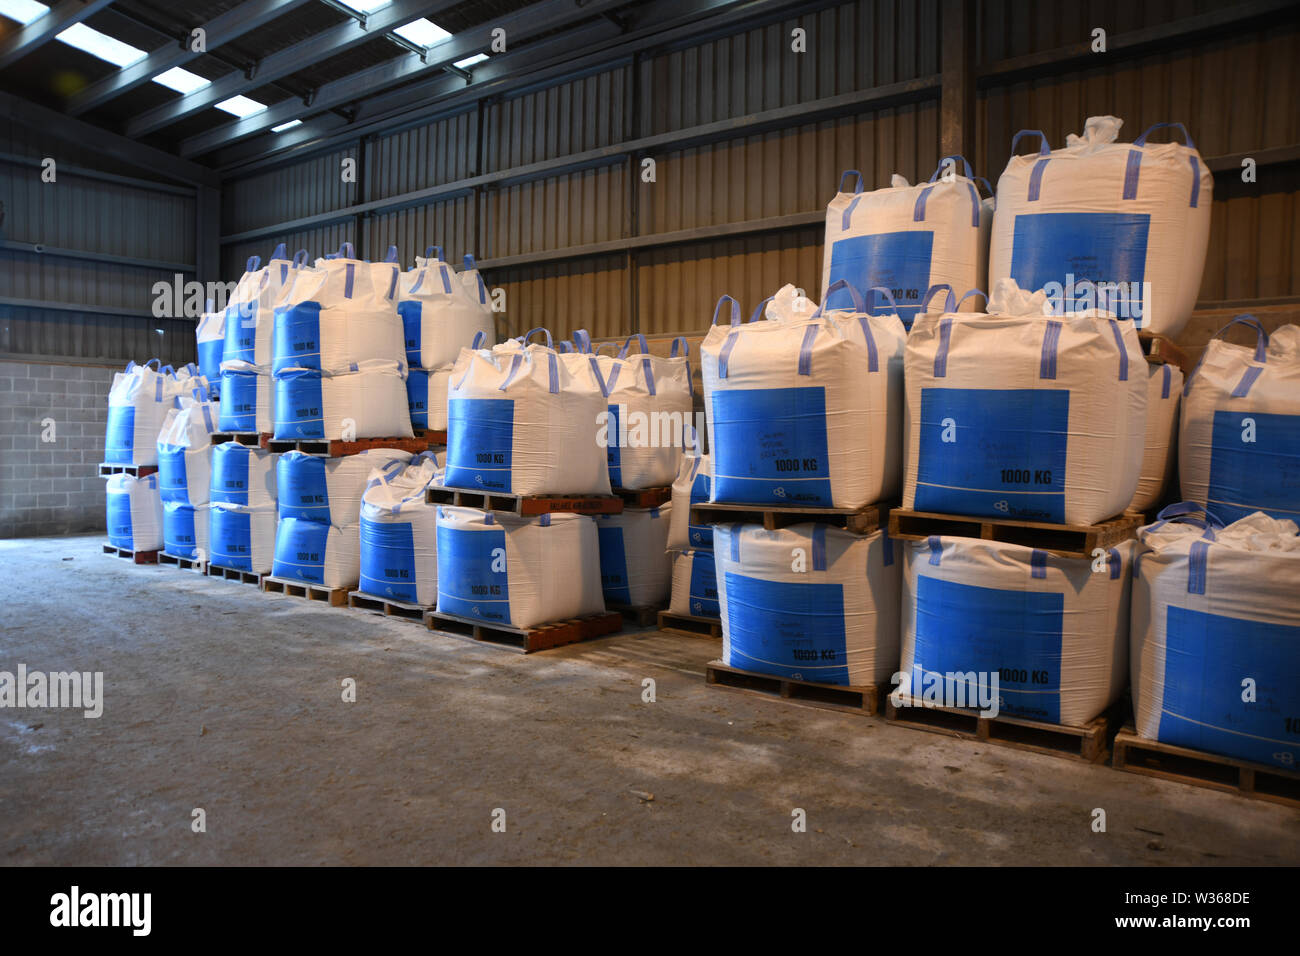 CHRISTCHURCH, Nuova Zelanda, dicembre 12, 2018: diversi metri cubi sacchi di concime bulk attendono la spedizione in una fabbrica. Foto Stock